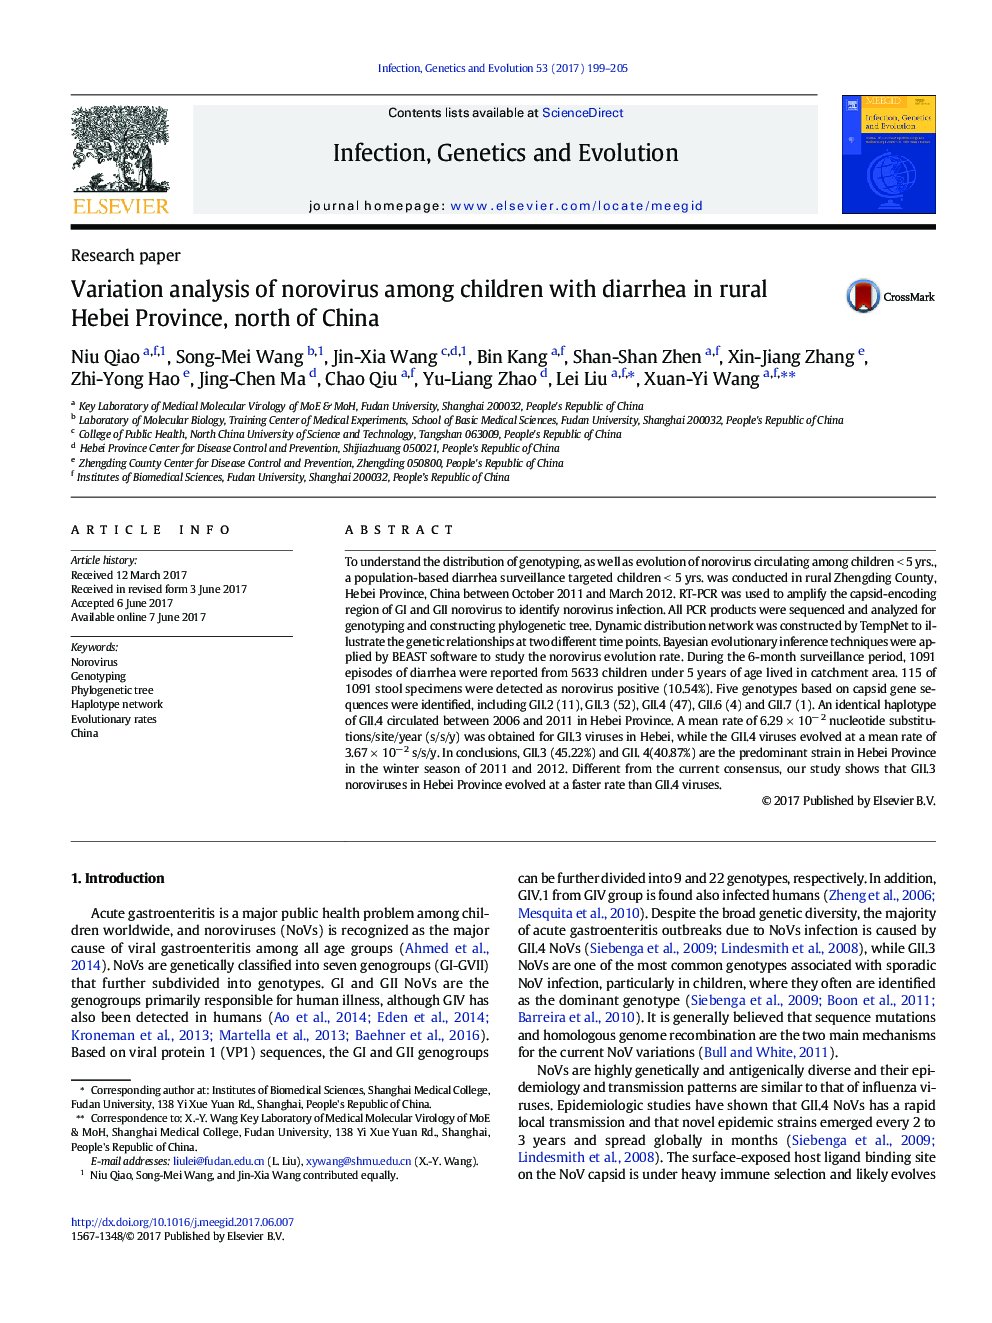 تحلیل تغییرات نواورویروس در کودکان مبتلا به اسهال در روستای هبئی شمالی چین 